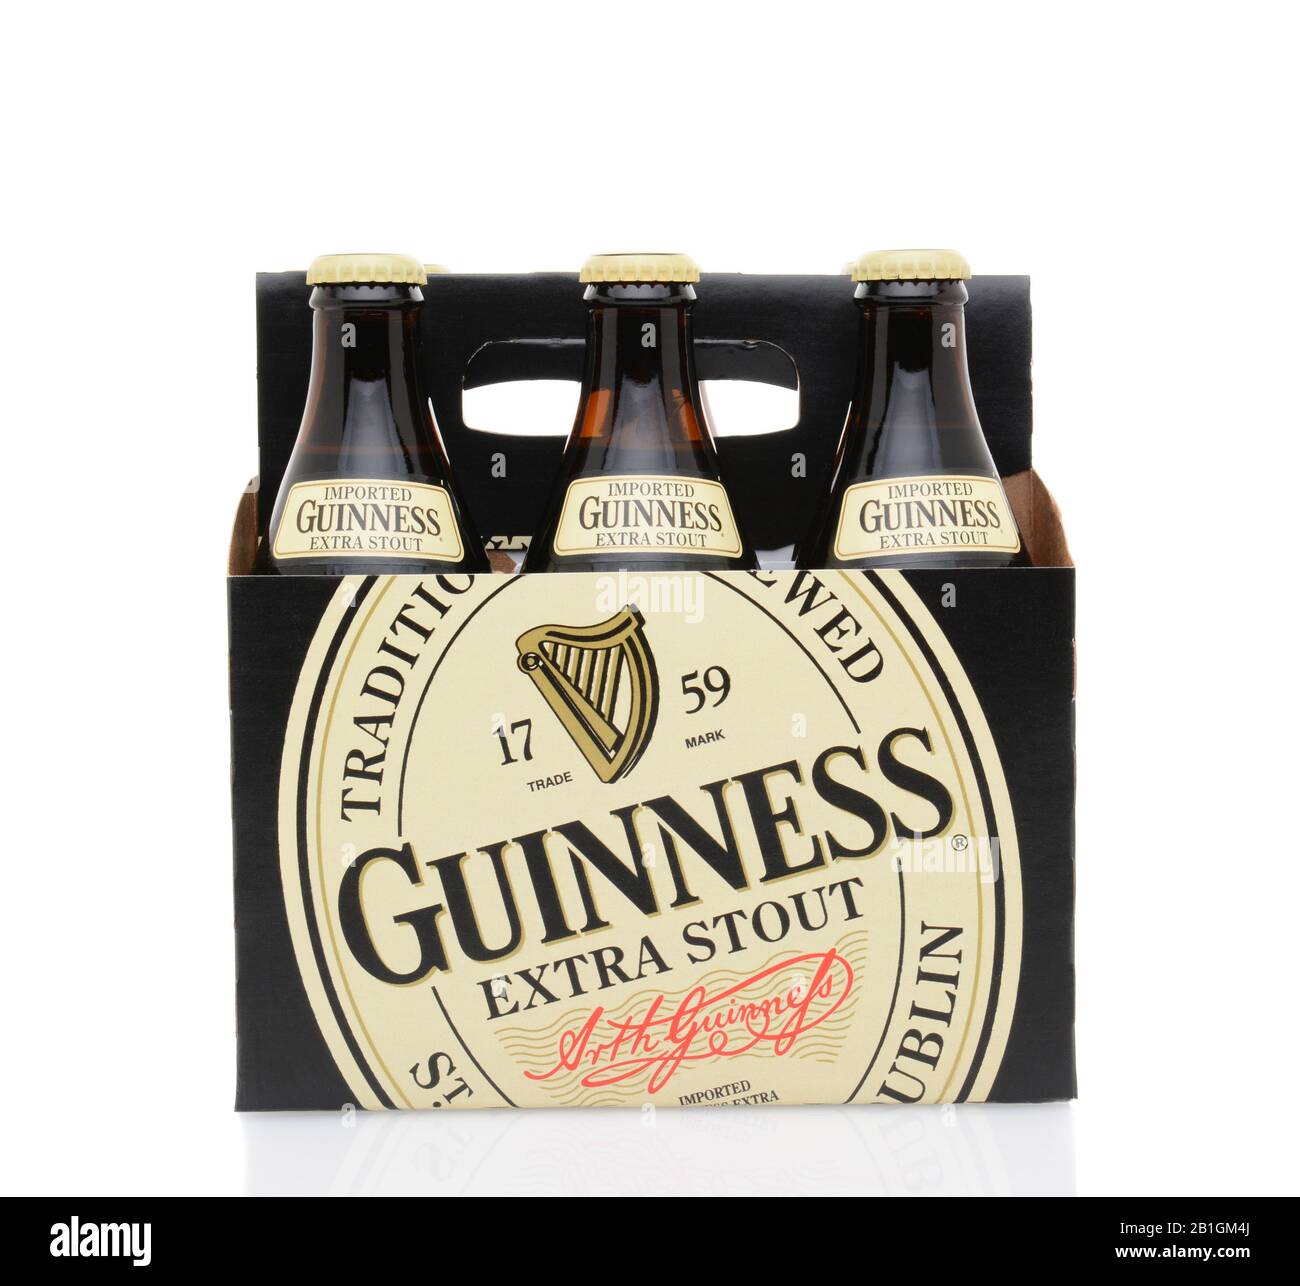 Irvine, CA - 25. MAI 2014: Eine 6-er Packung Guinness Extra Stout. Das Irish Beer ist eine der weltweit erfolgreichsten Biermarken mit einem Jahresumsatz von über 85 Stockfoto